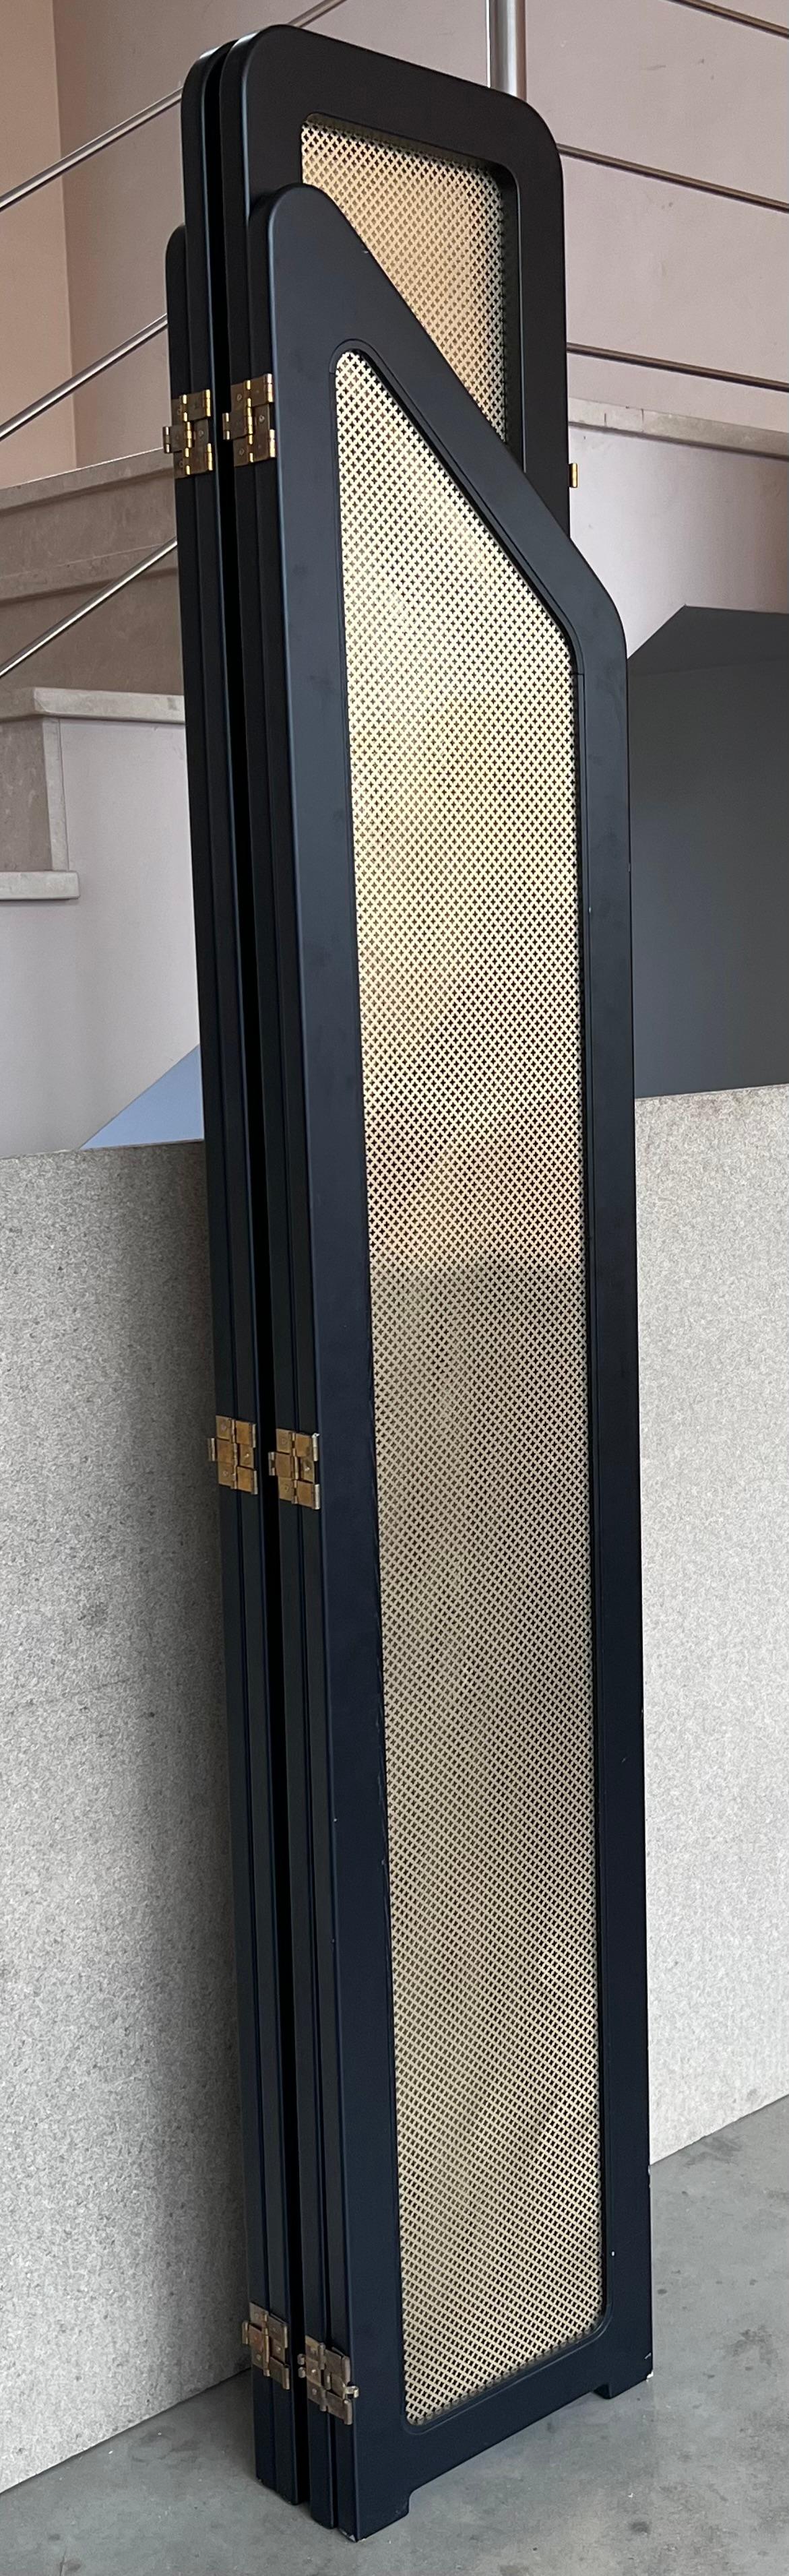 Art Deco Raumteiler schwarzes ebonisiertes Holz und goldene Metallschirme

Ein schöner 4-Panel-Faltwand, in schwarz lackiertem Holz über Gold-Metall-Finish großes Design leicht zu bewegen, jedes Panel seine 14,17' breit. Der Bildschirm ist in